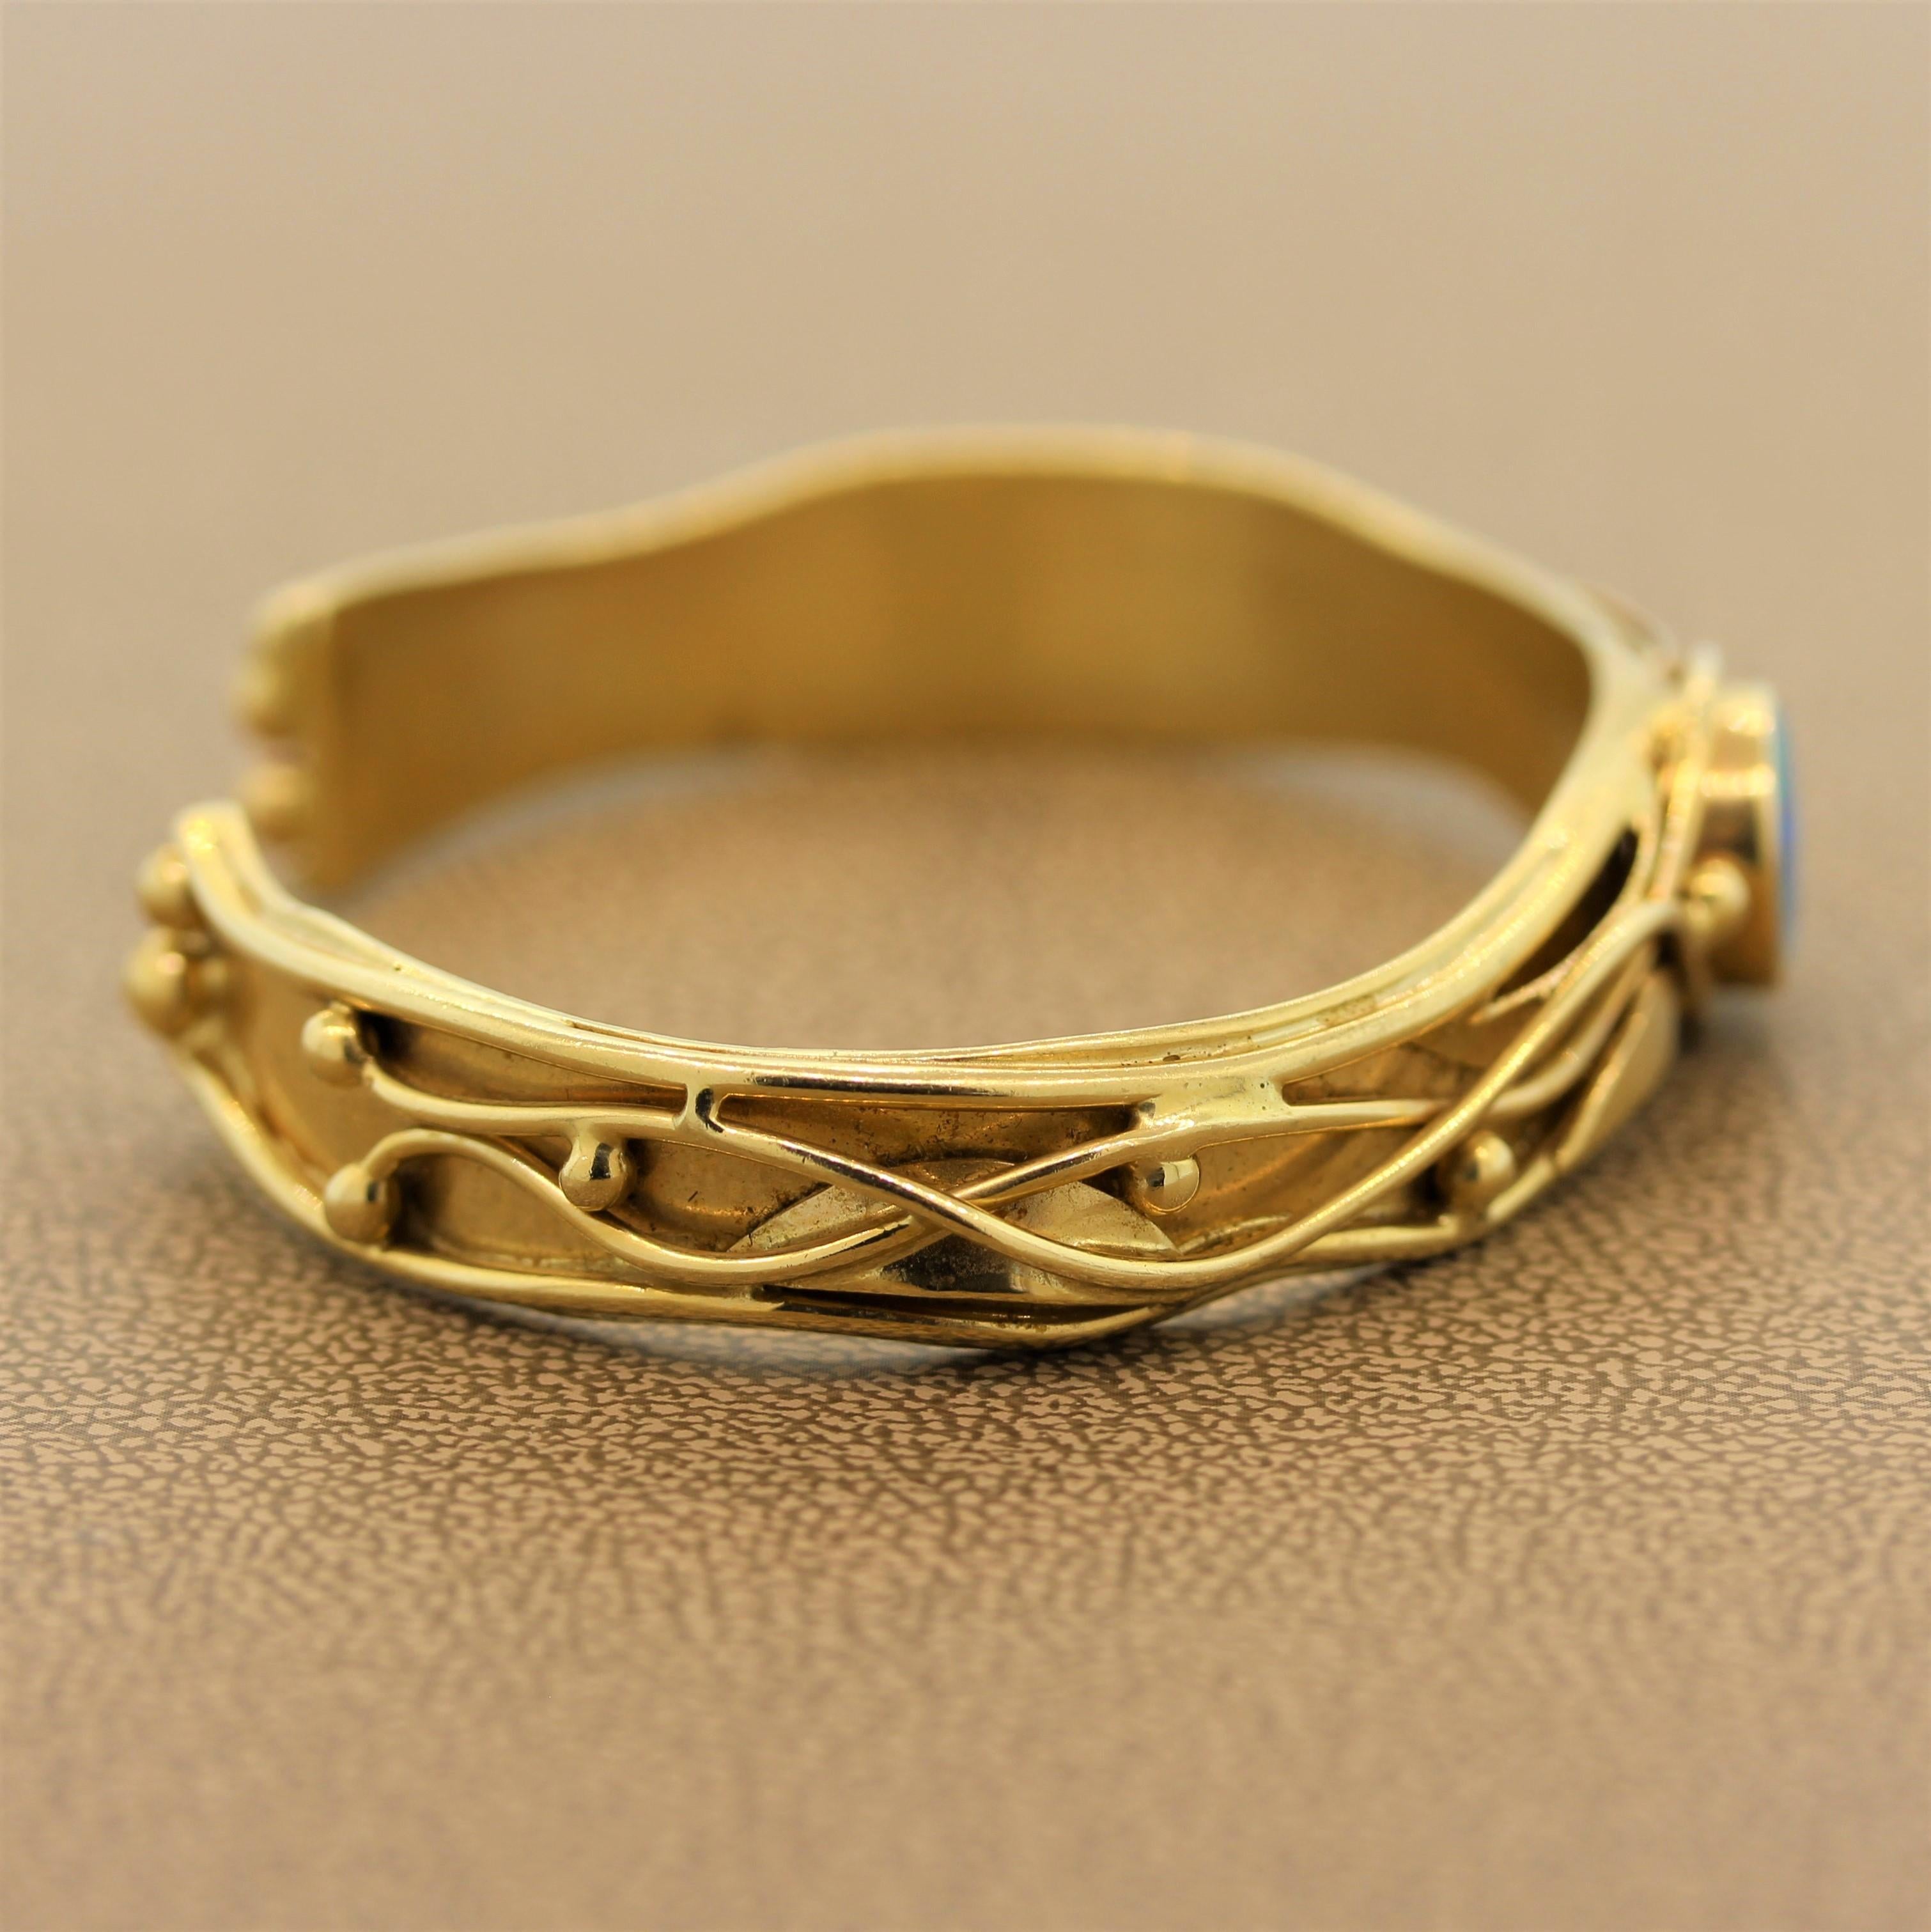 gold cuff bracelet australia